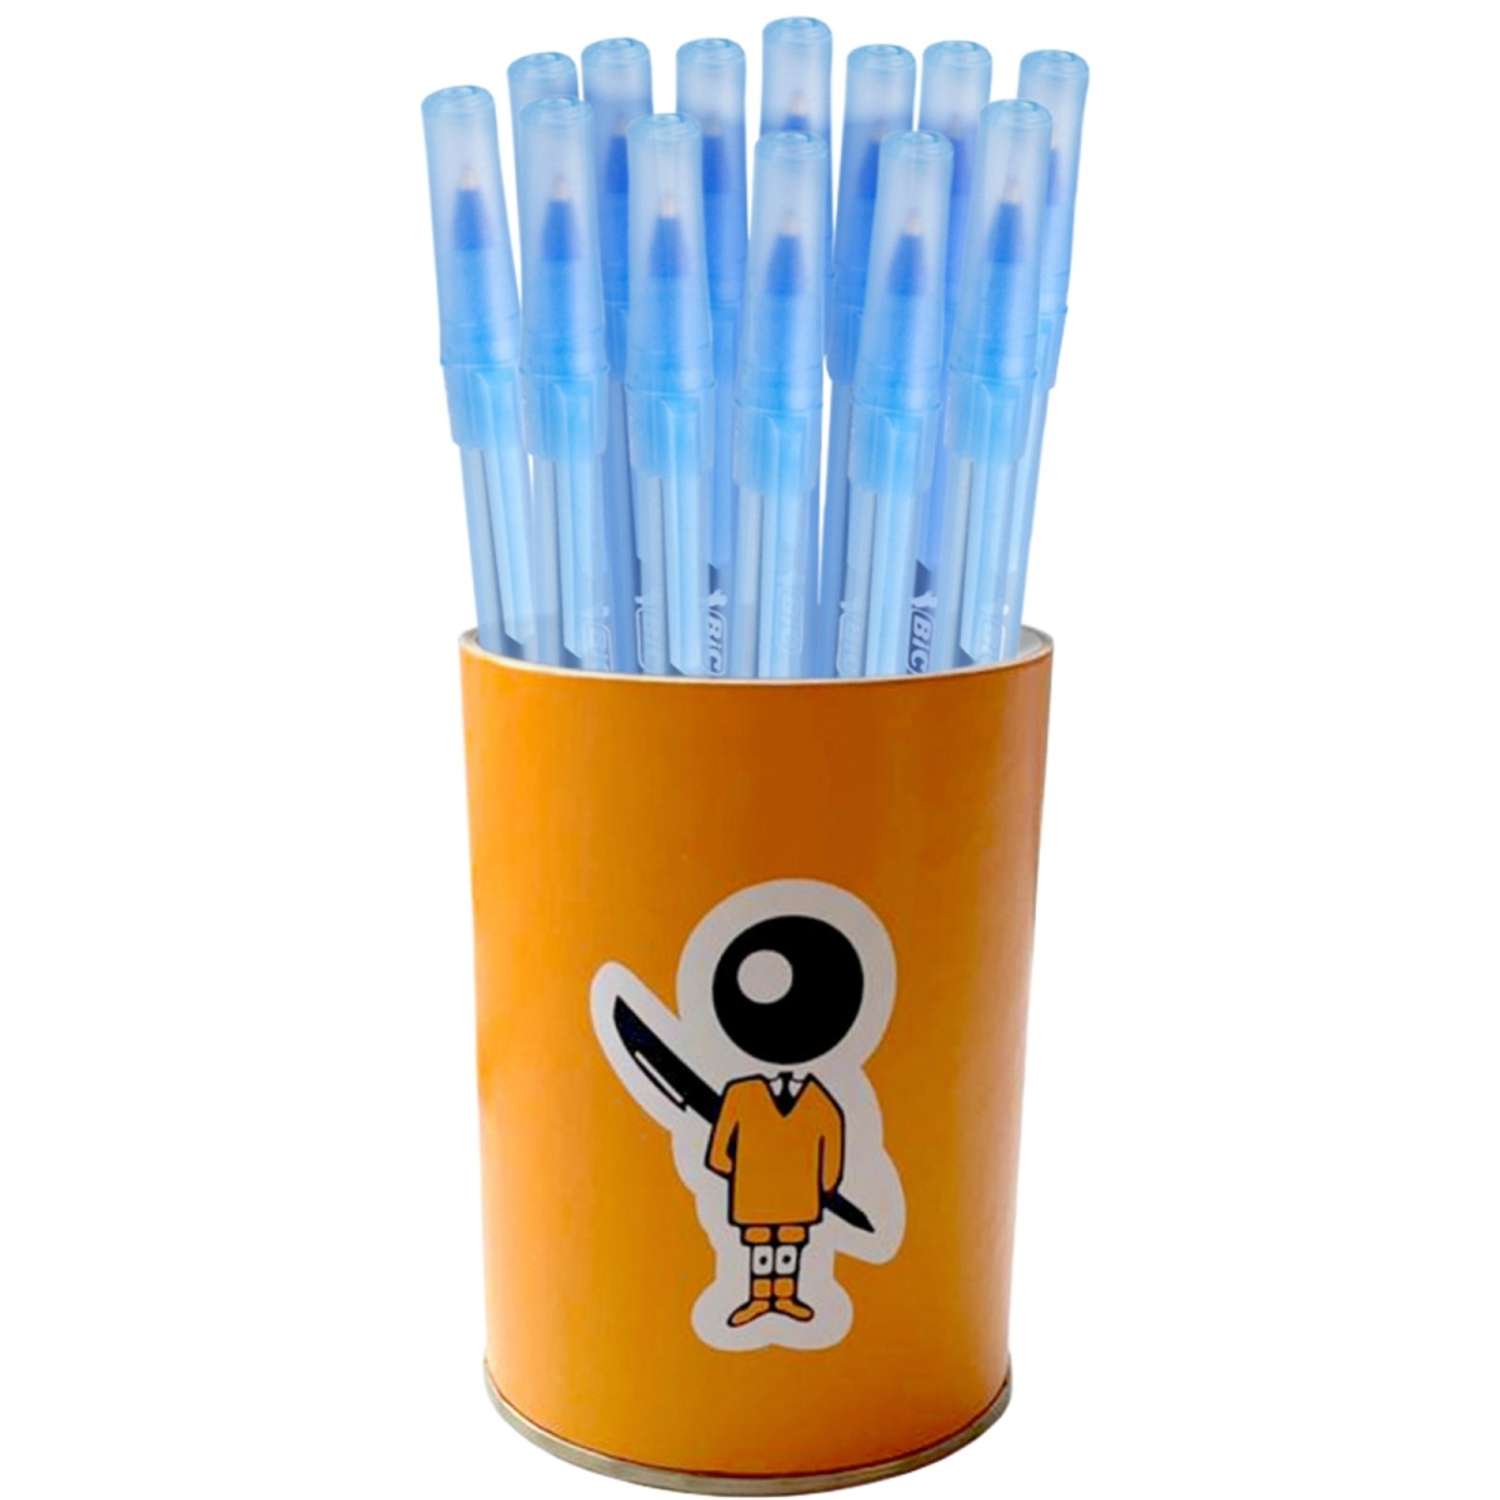 Ручка стик. Ручка шариковая BIC "Round Stic" синяя, 1,0мм. Ручка шариковая BIC раунд стик синяя, 921403,0,32 мм. Ручка шариковая BIC Round Stic. Ручка BIC Round Stic синяя.